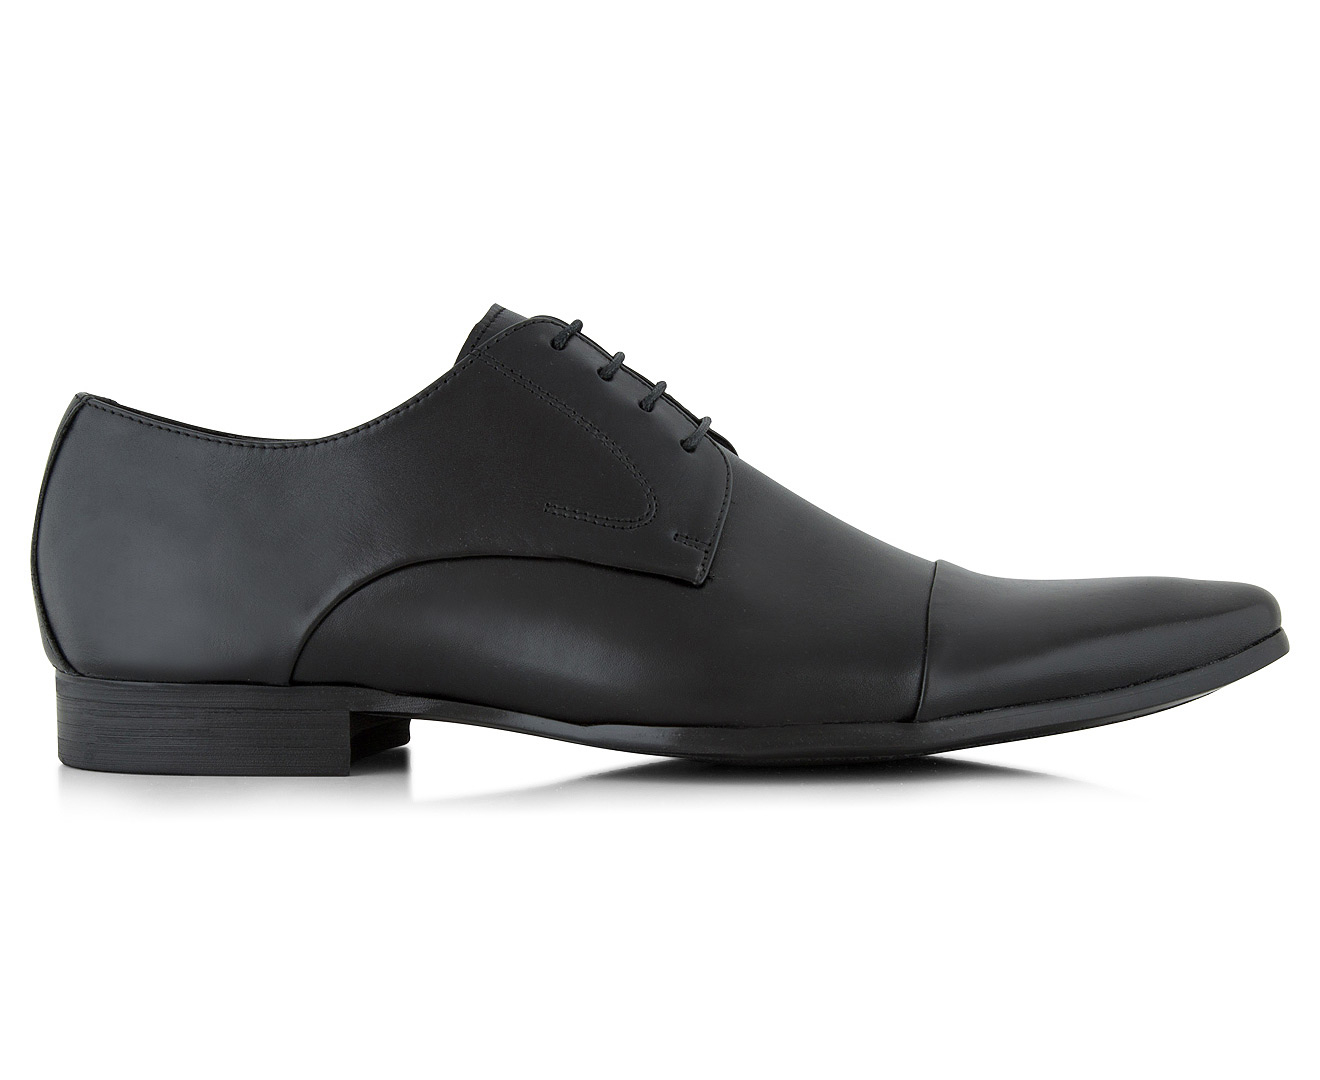 Windsor Smith Men's Justinn Dress Shoe - Black